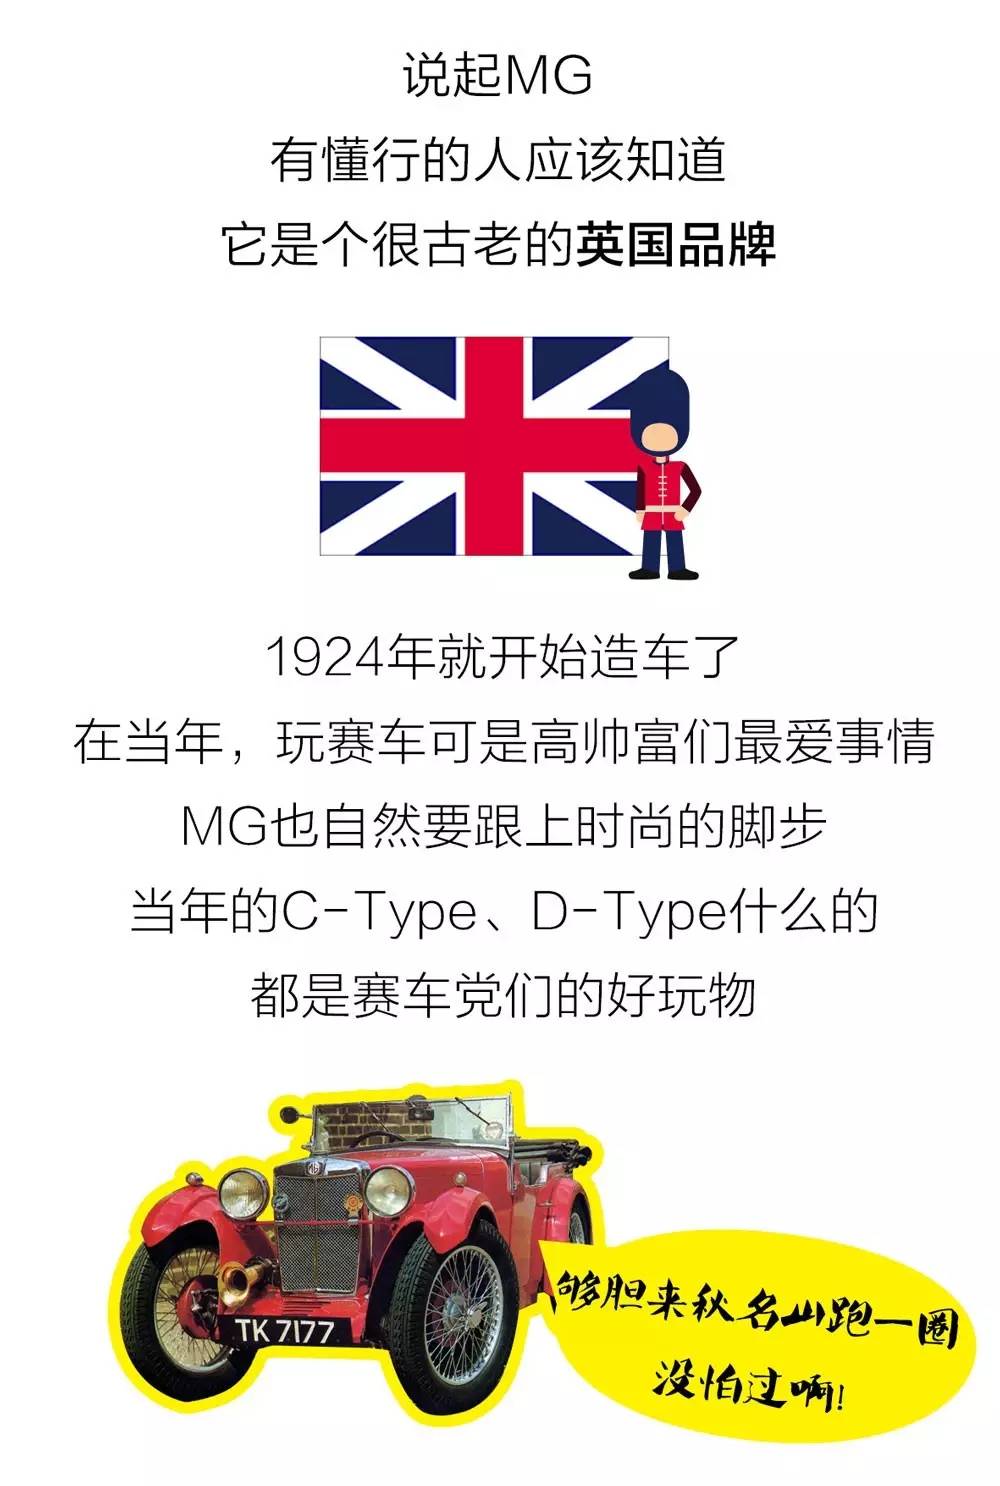 这个英国汽车品牌其实是我们中国的